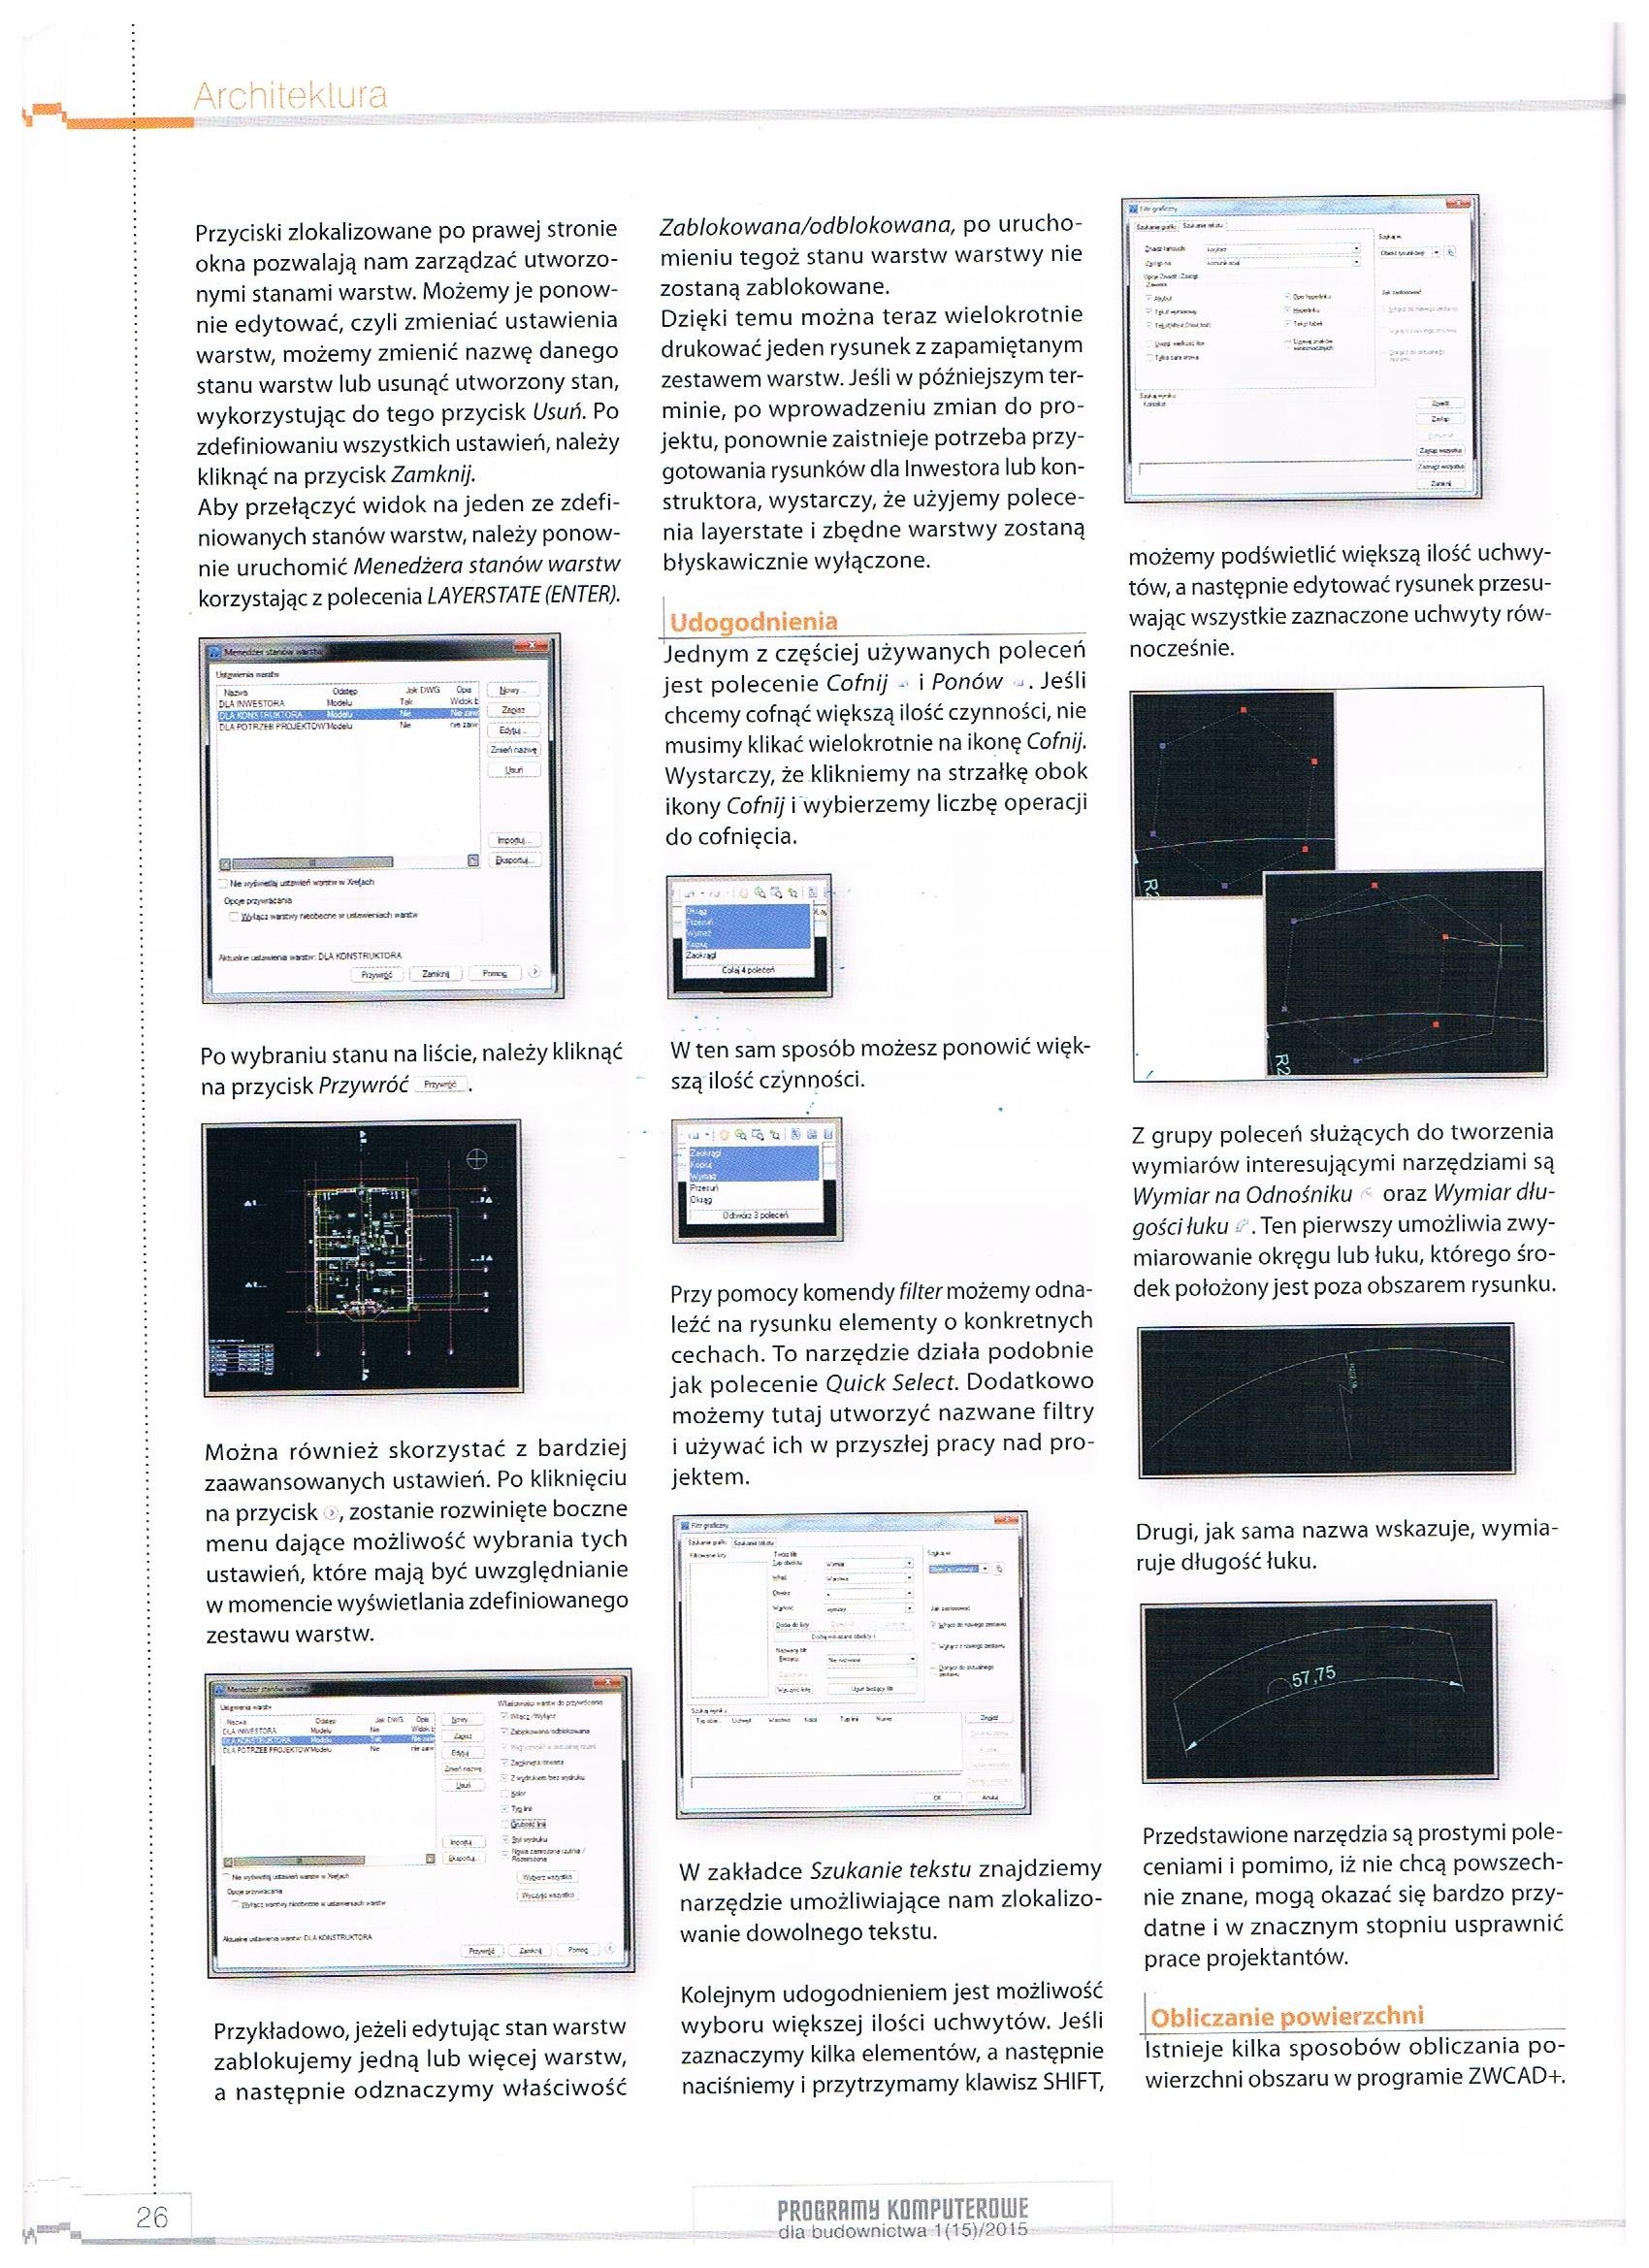 Programy komputerowe dla budownictwa 1-15-2015 str. 26